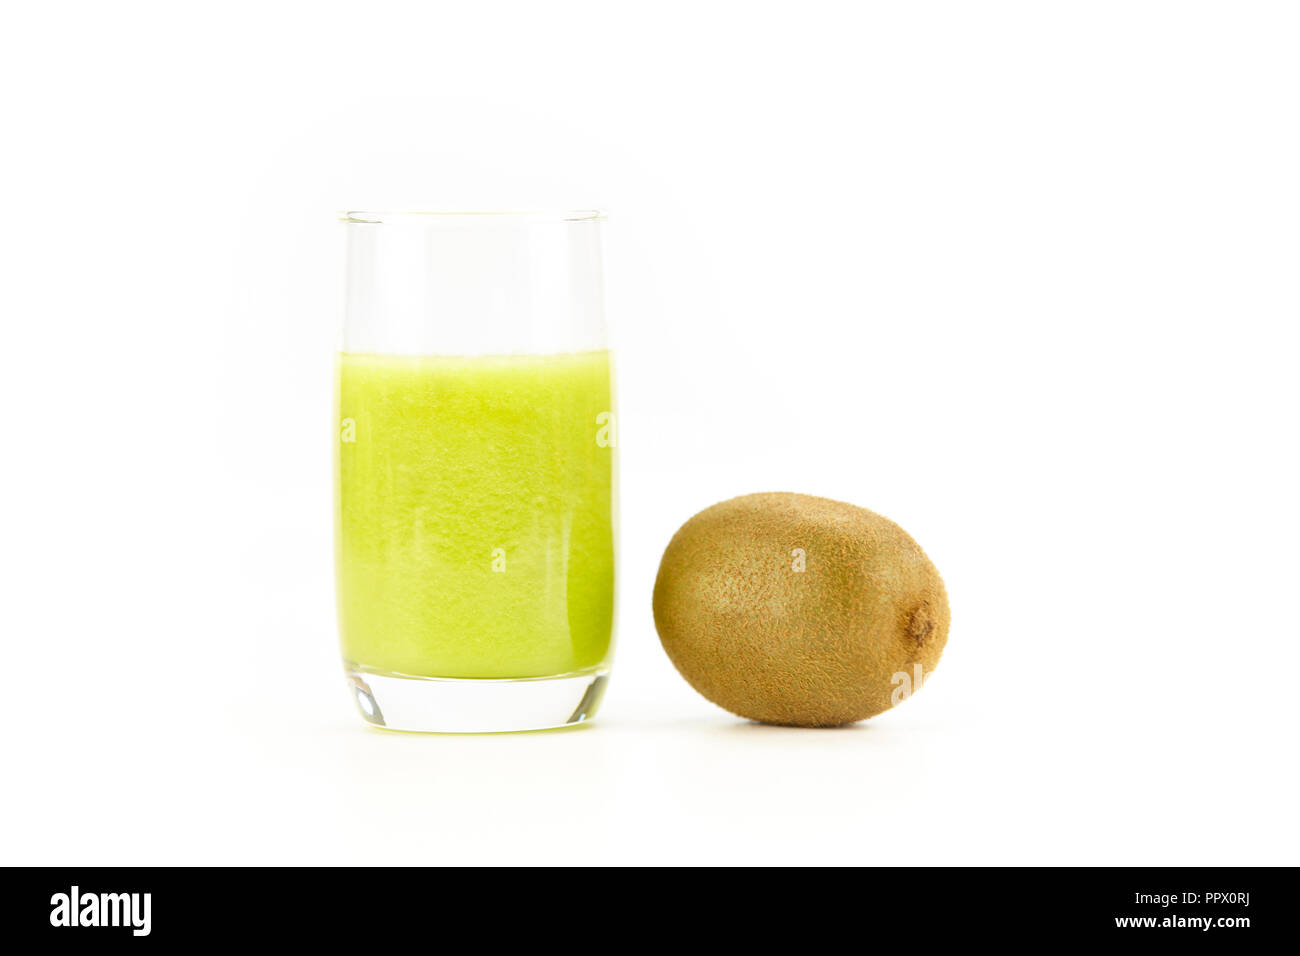 one kiwi fruit and a glass of kiwi juice isolated on white background. Stock Photo